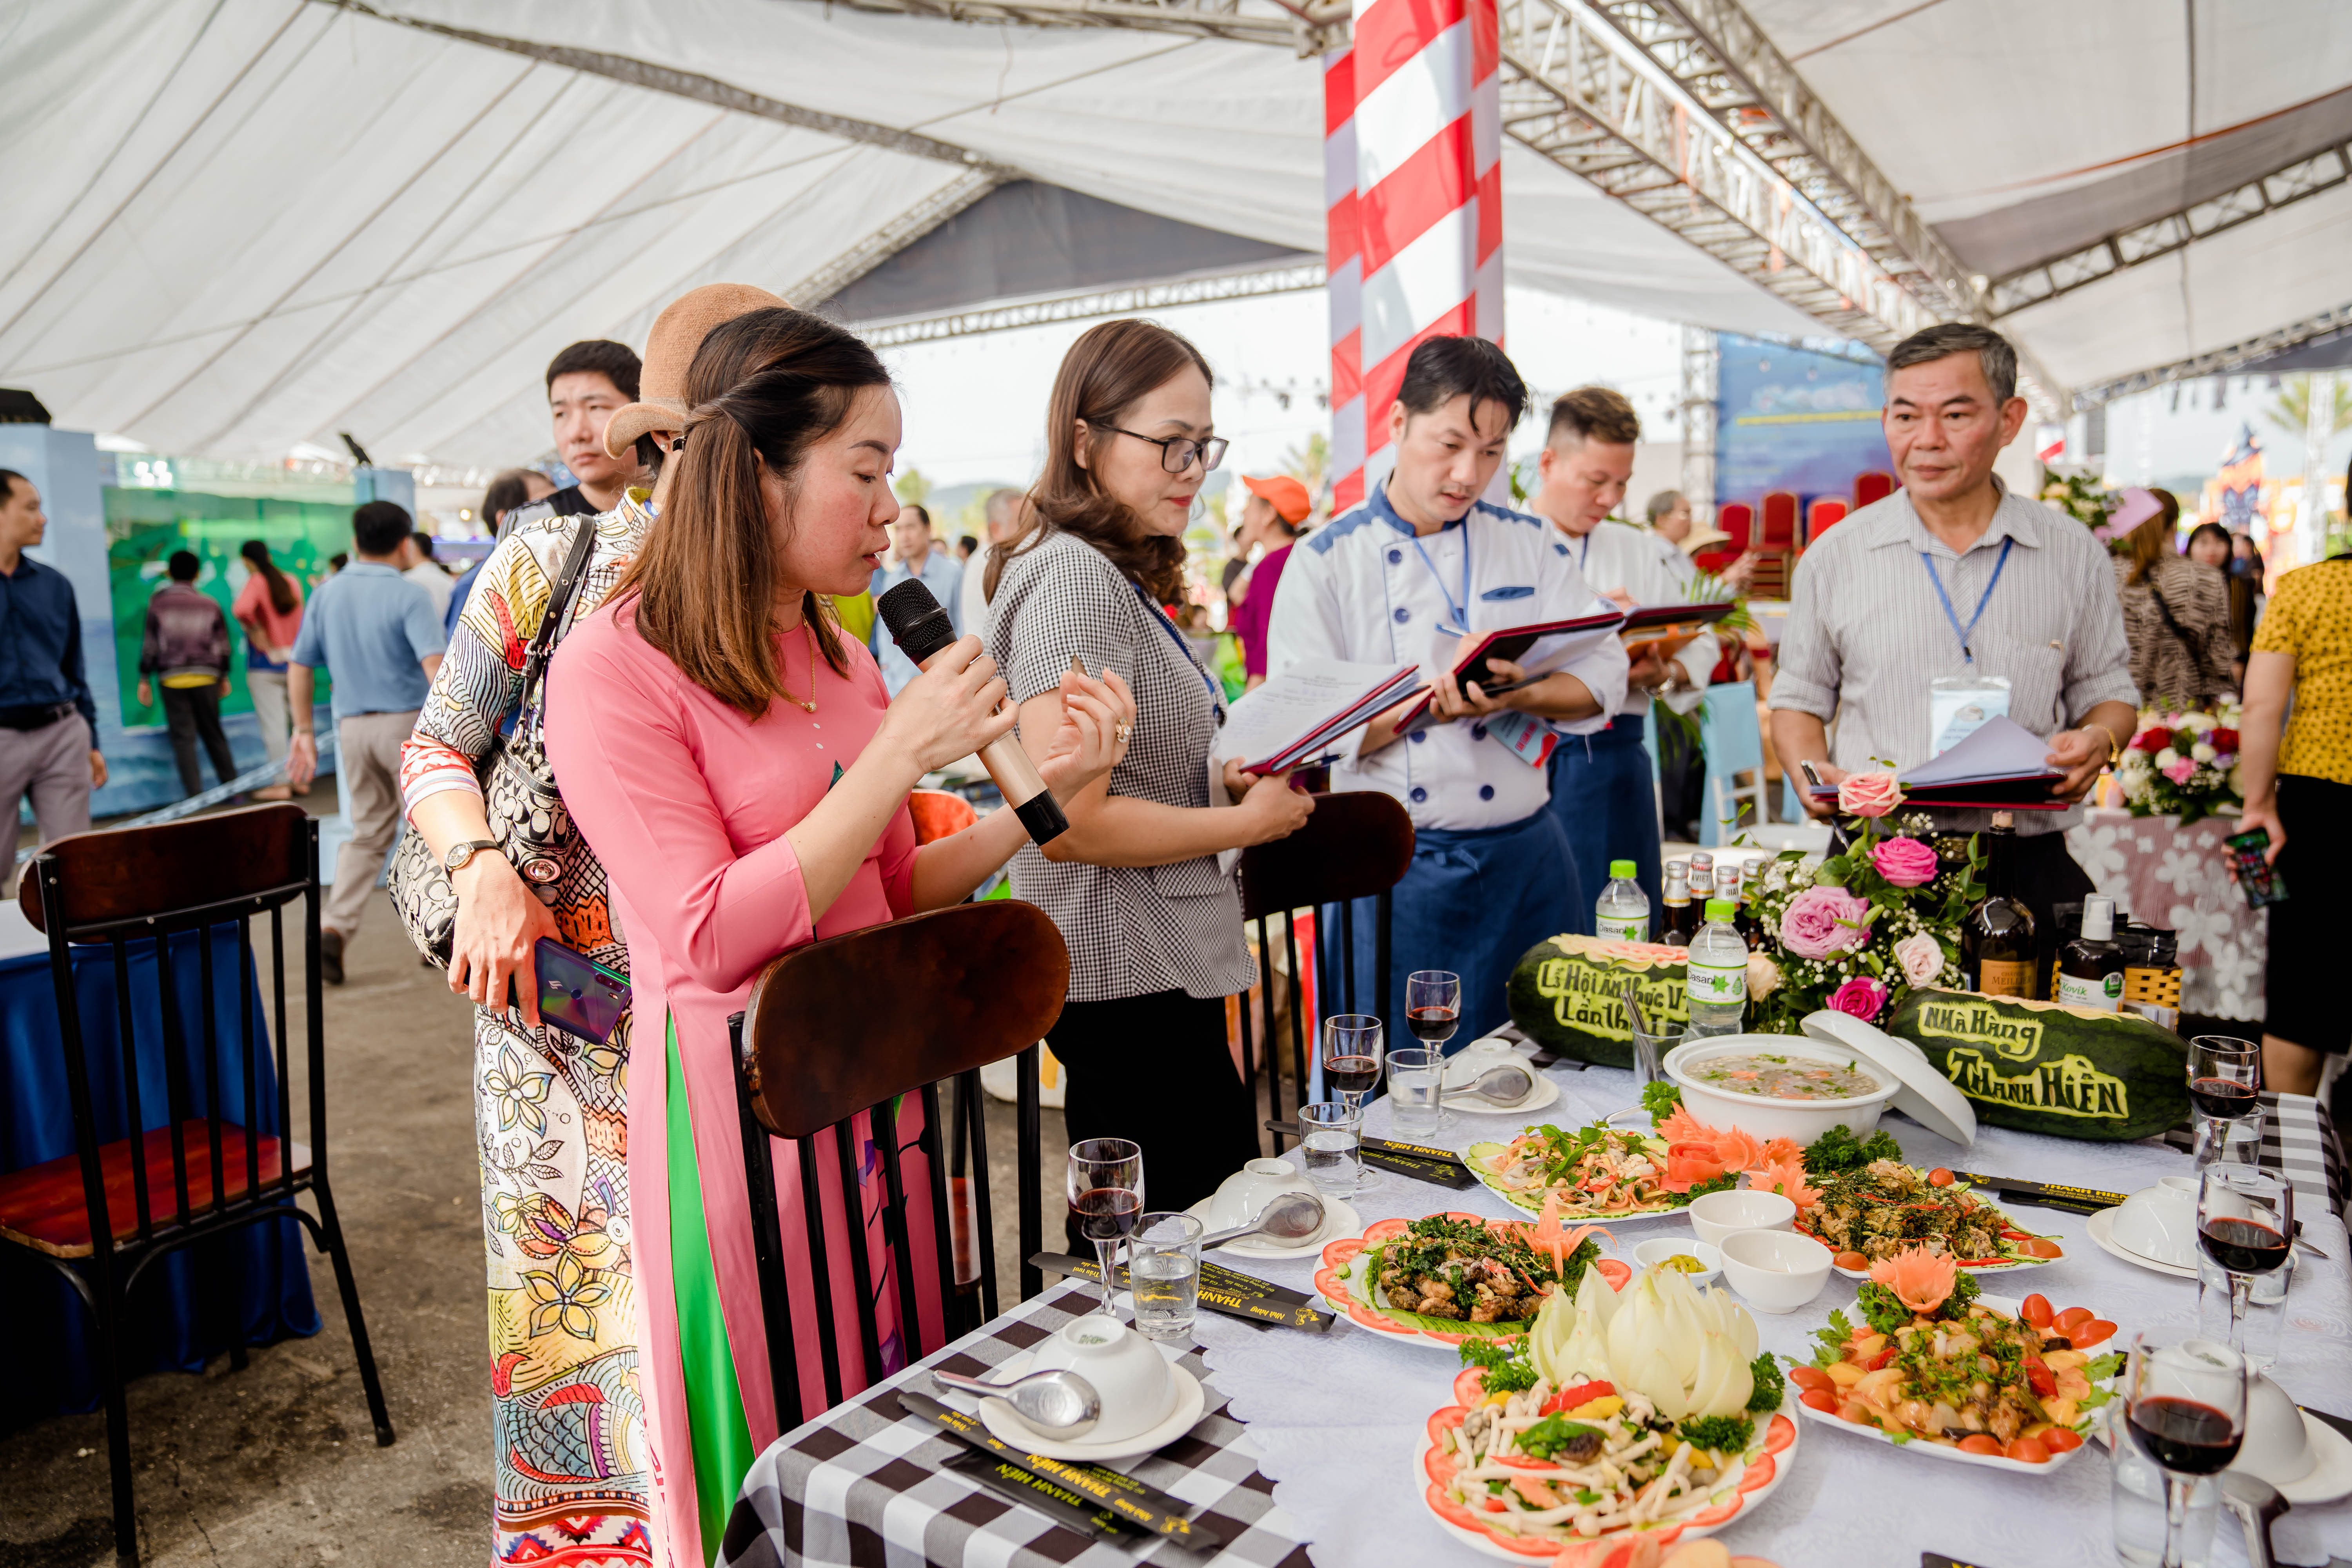 Nhà hàng Thanh Hiền (địa chỉ Đường Mới KĐT Thống Nhất, khu 2 TT Cái Rồng, Vân Đồn) nhận giải A trong nội dung trưng bày các món ăn đặc sản địa phương.